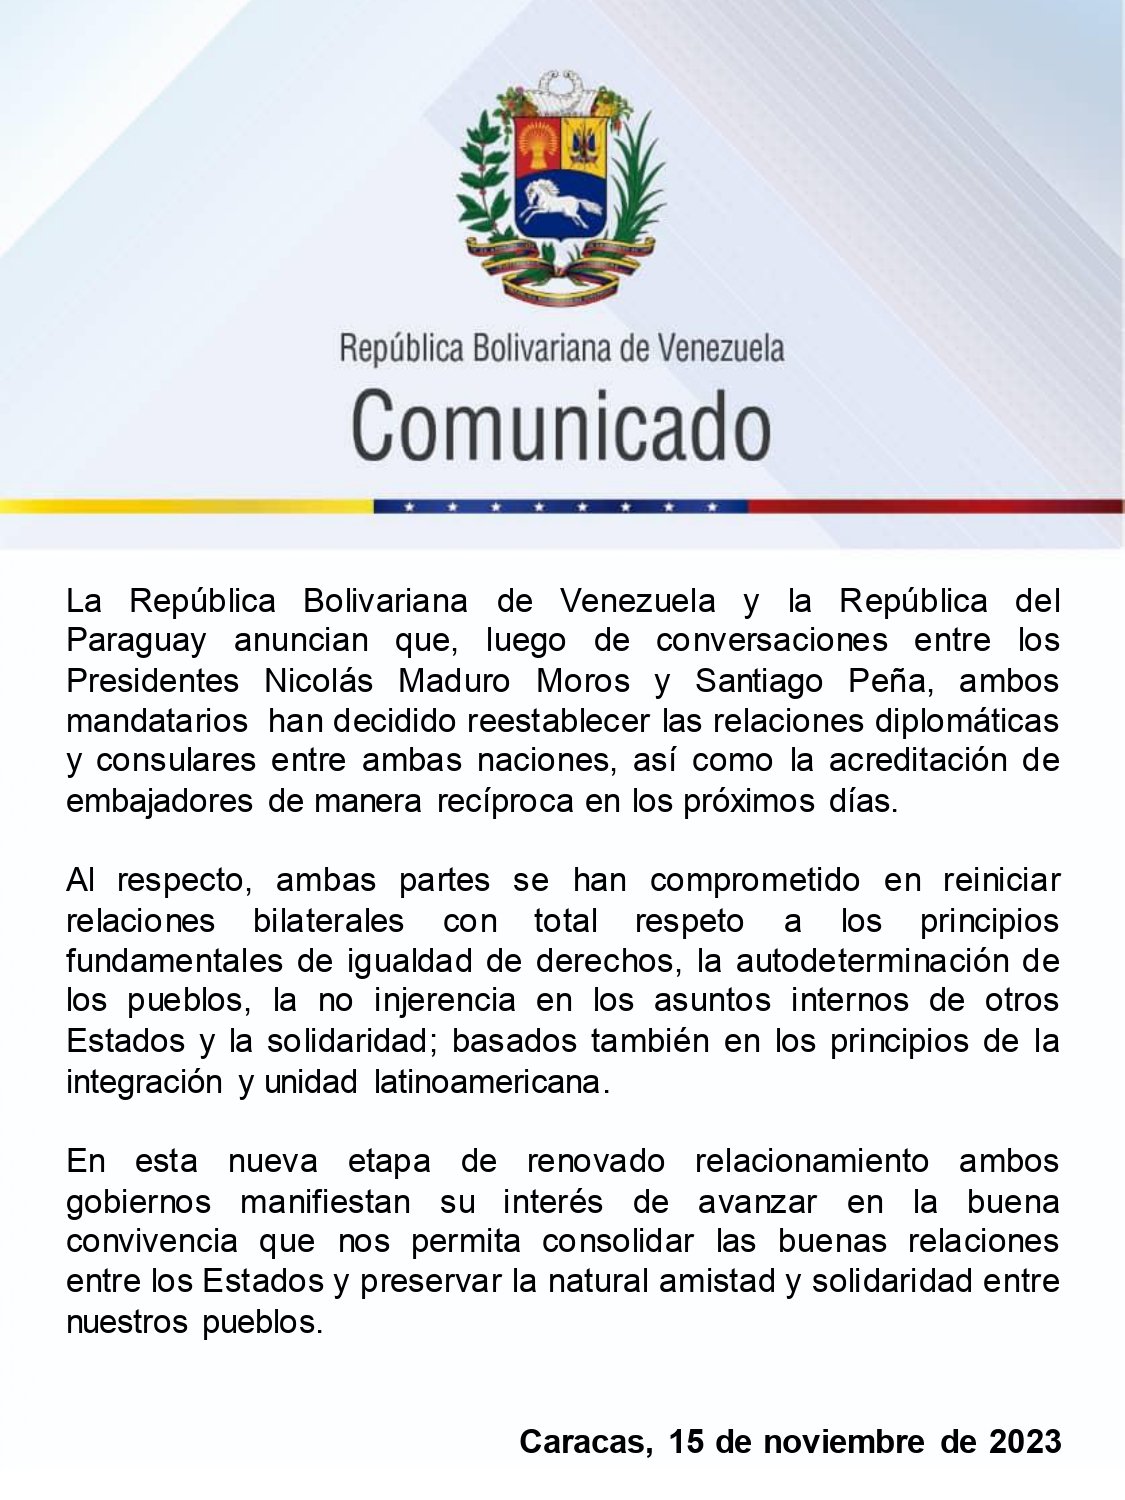 Paraguay restableció relaciones diplomáticas con el gobierno de Maduro